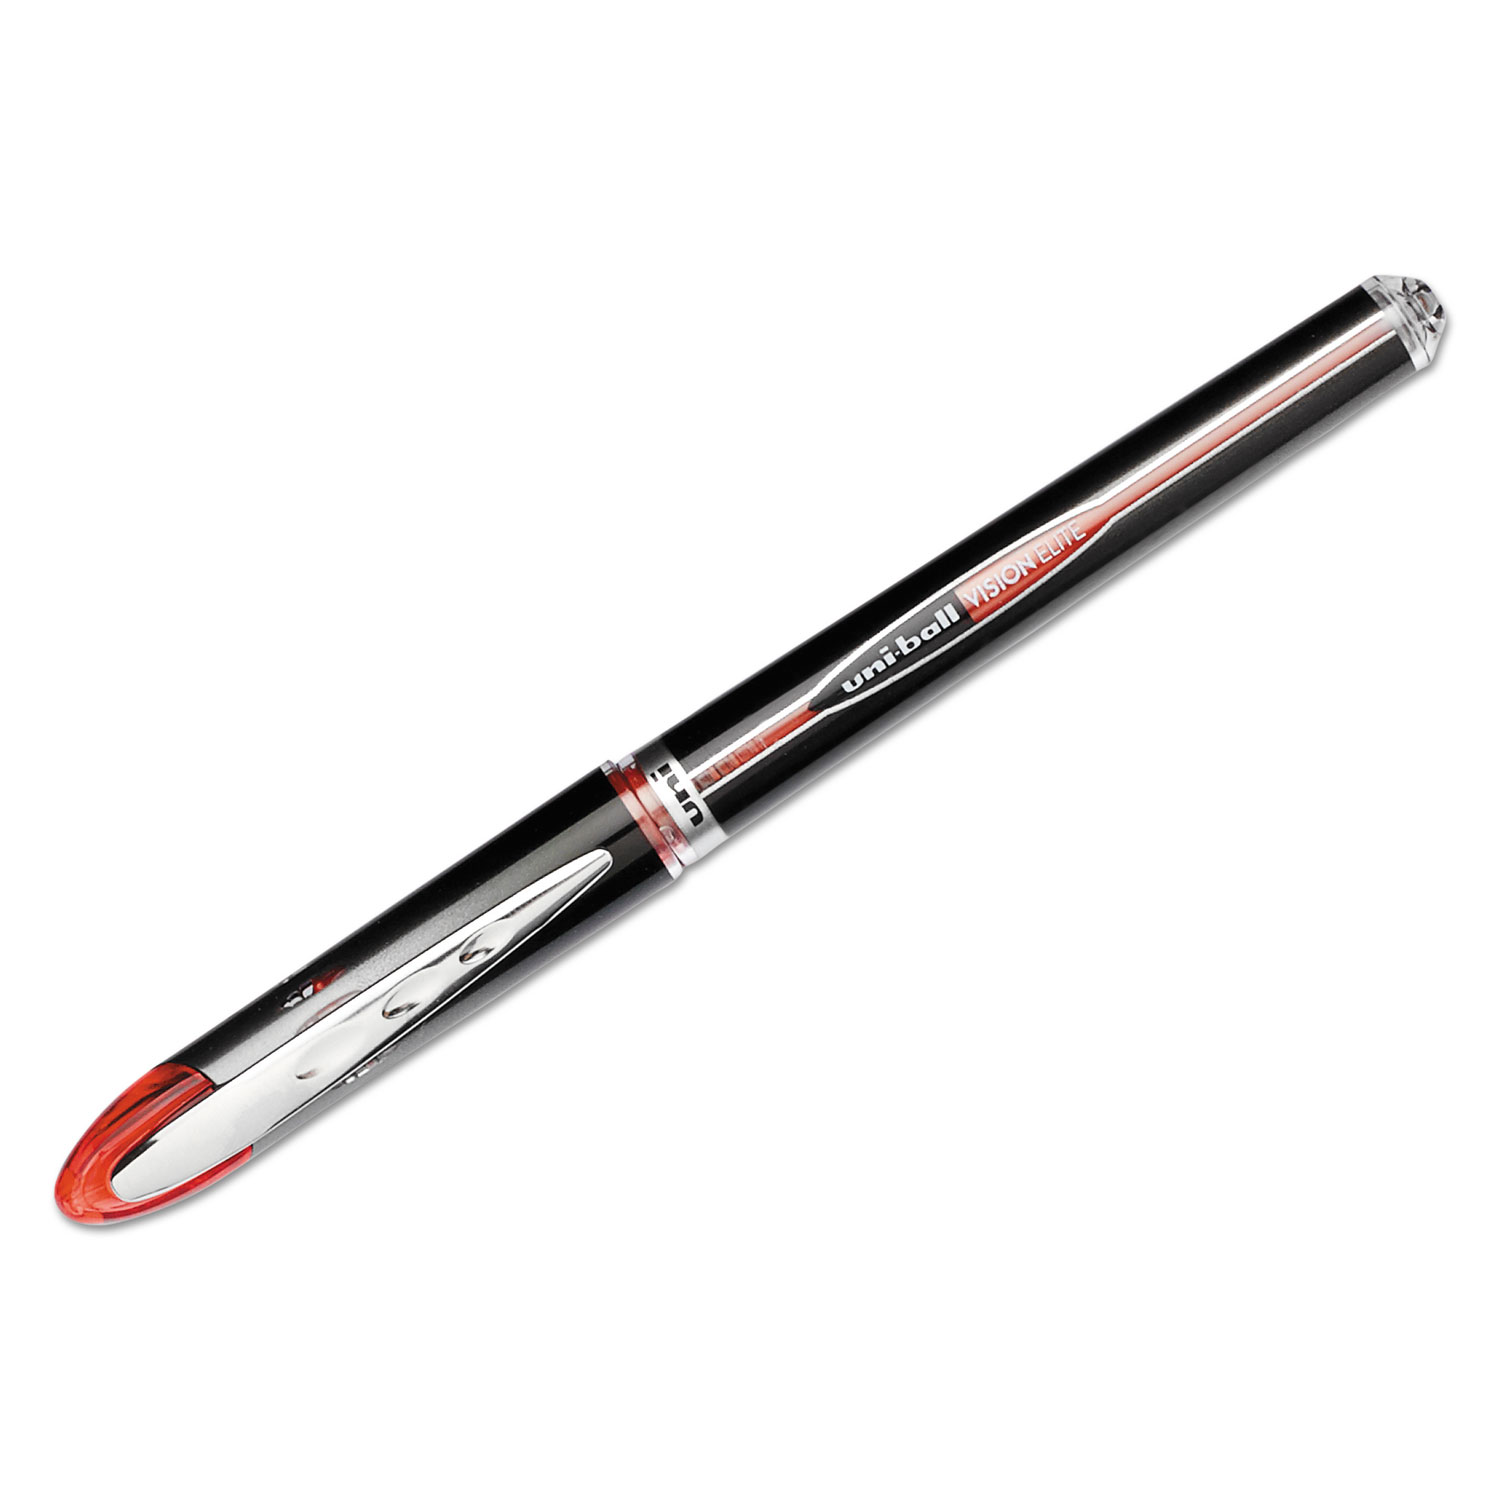  uni-ball 69022 VISION ELITE Stick Roller Ball Pen, Super-Fine 0.5mm, Red Ink, Black/Red Barrel (UBC69022) 